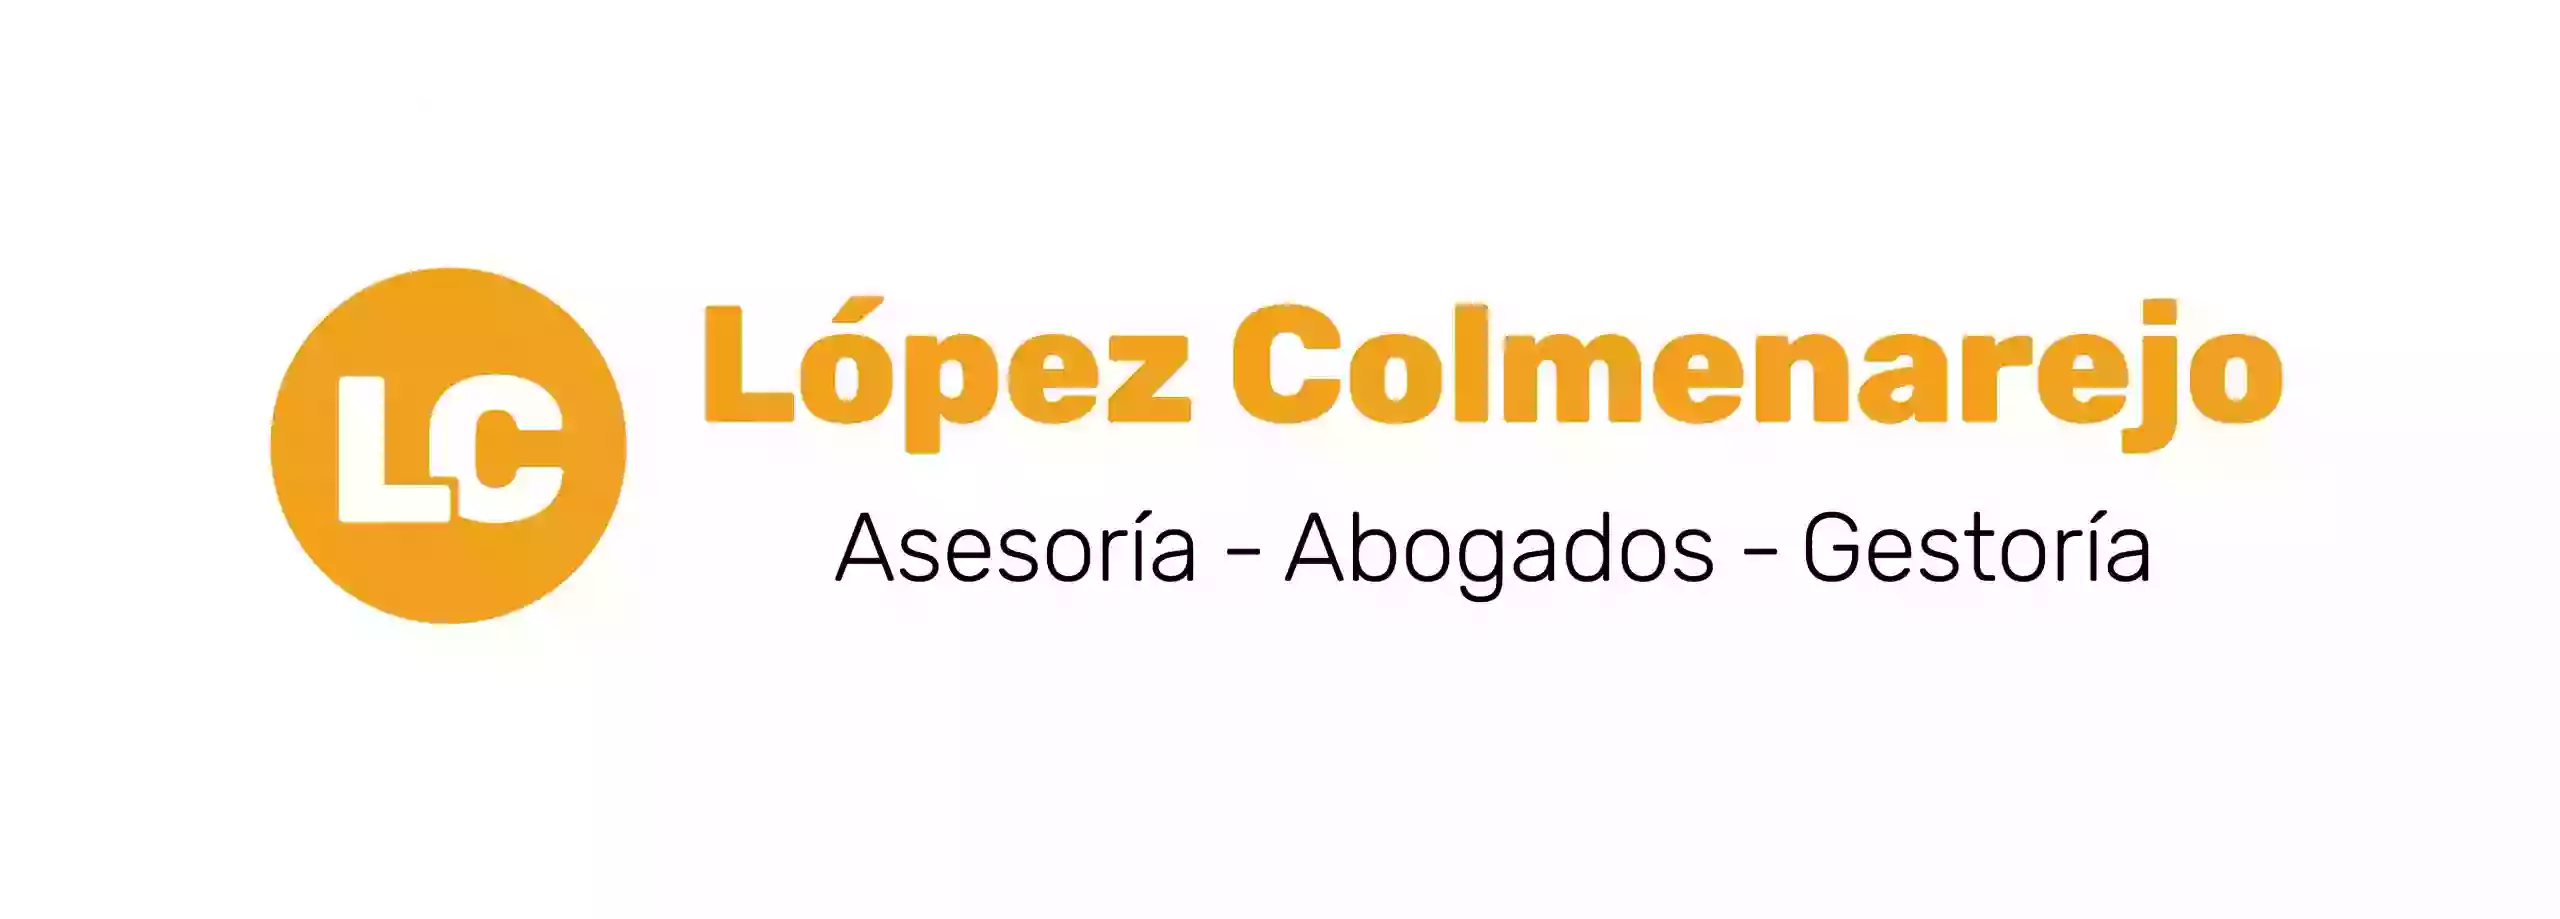 Oficinas López Colmenarejo SL